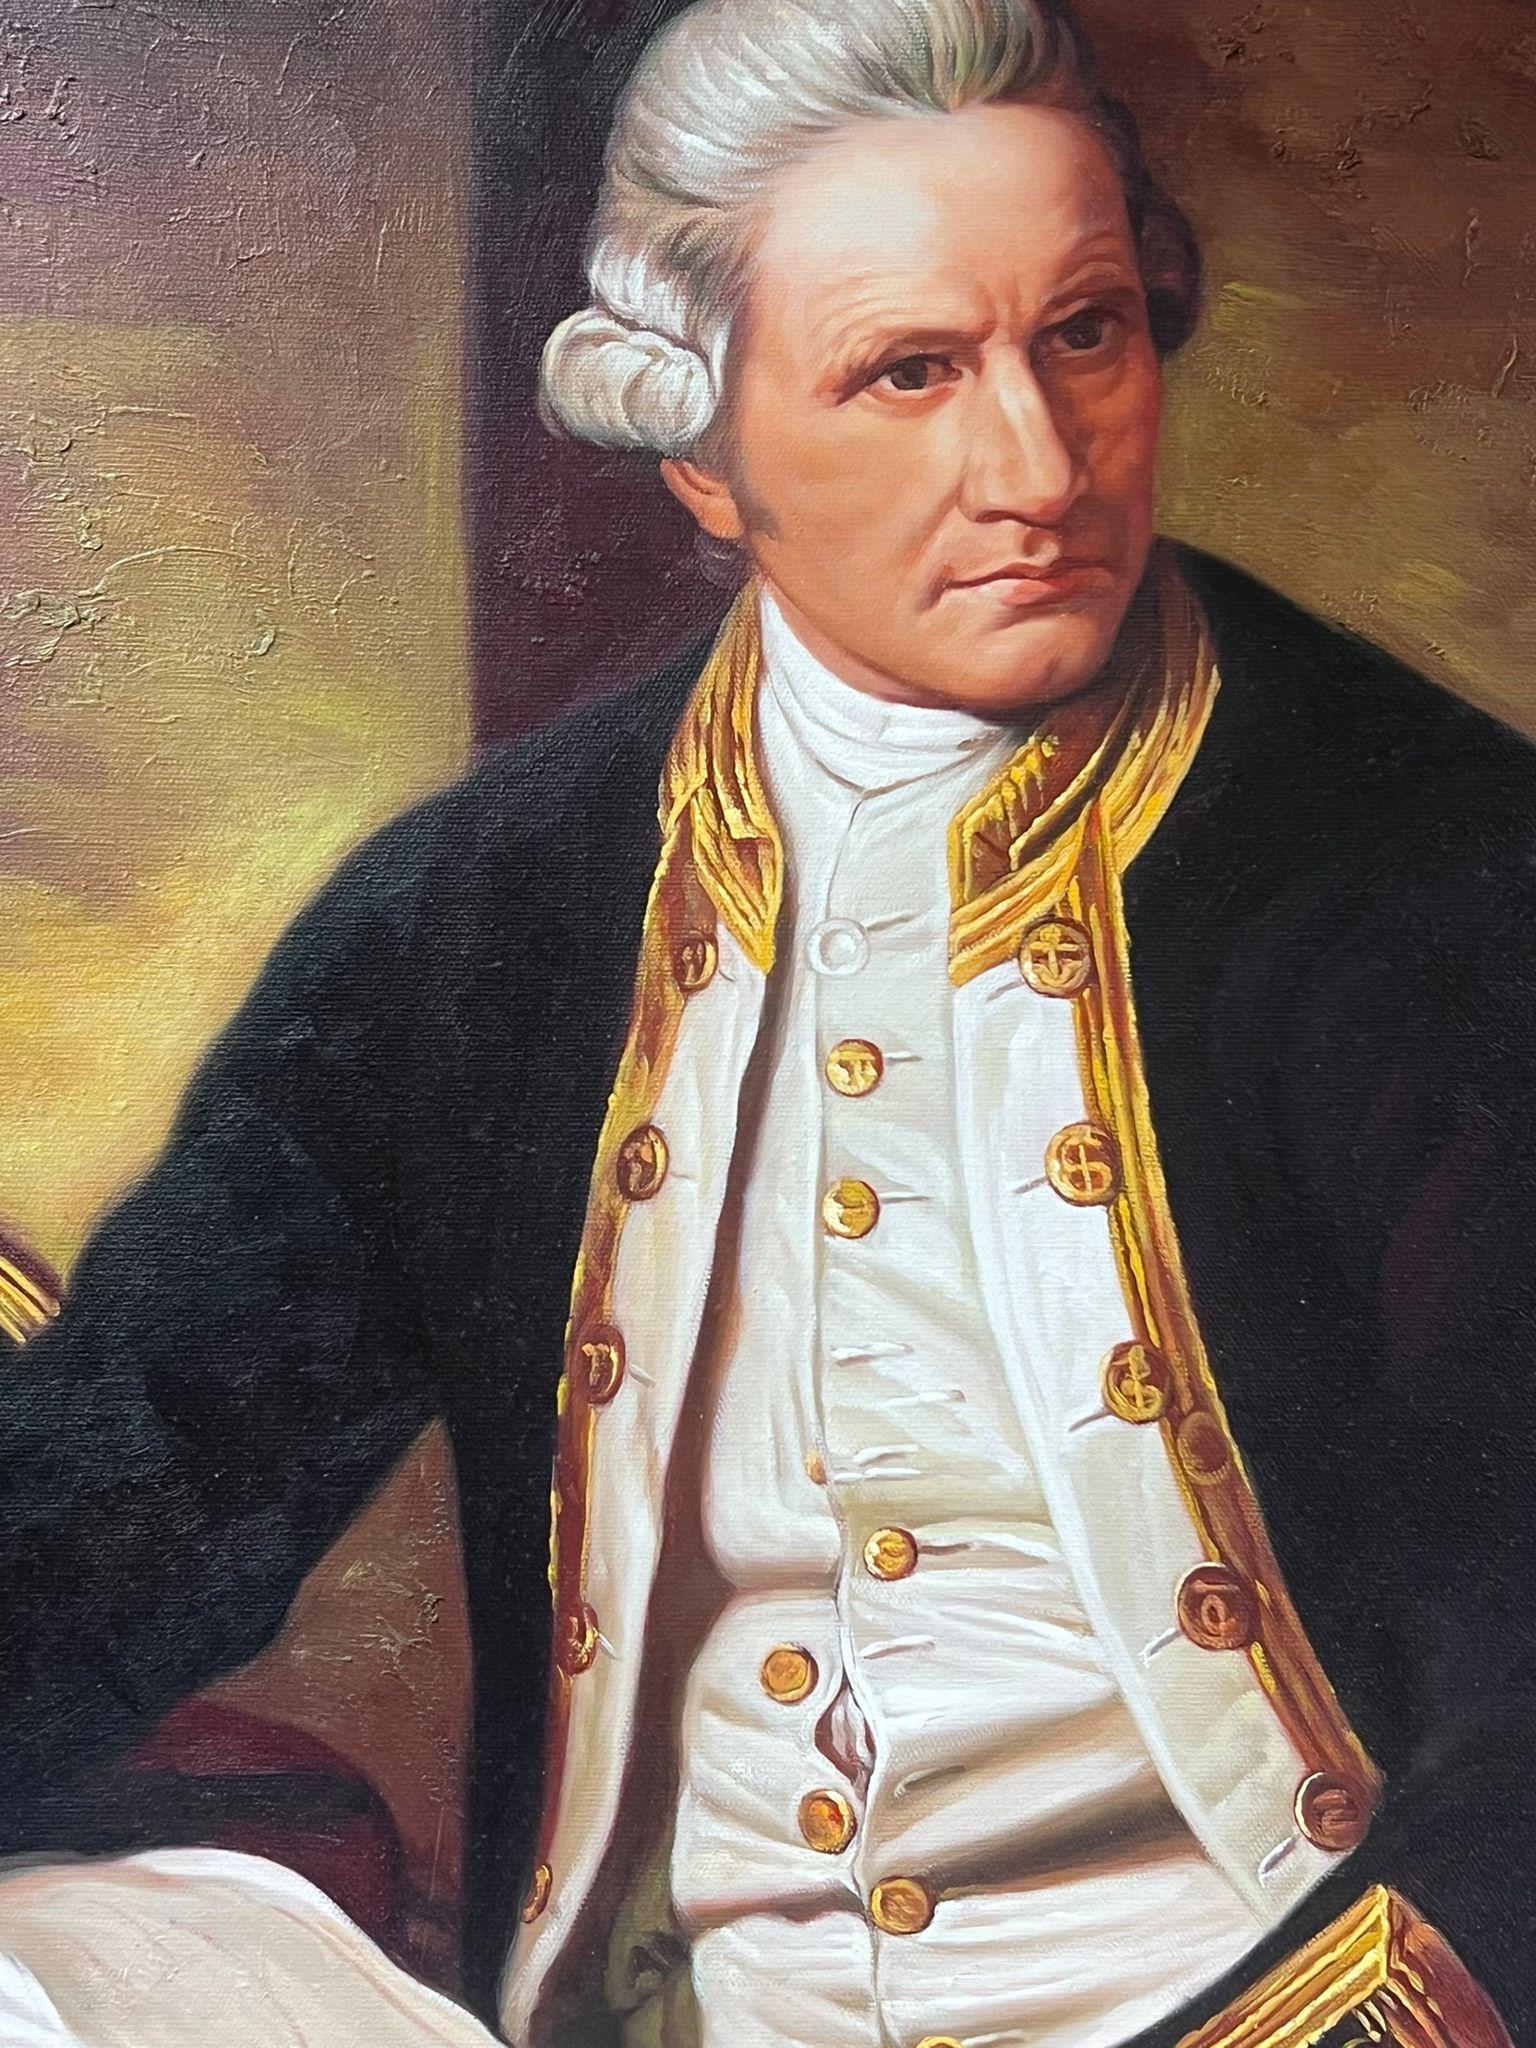 Captain James Cook Portrait Large Oil Painting on Canvas 5